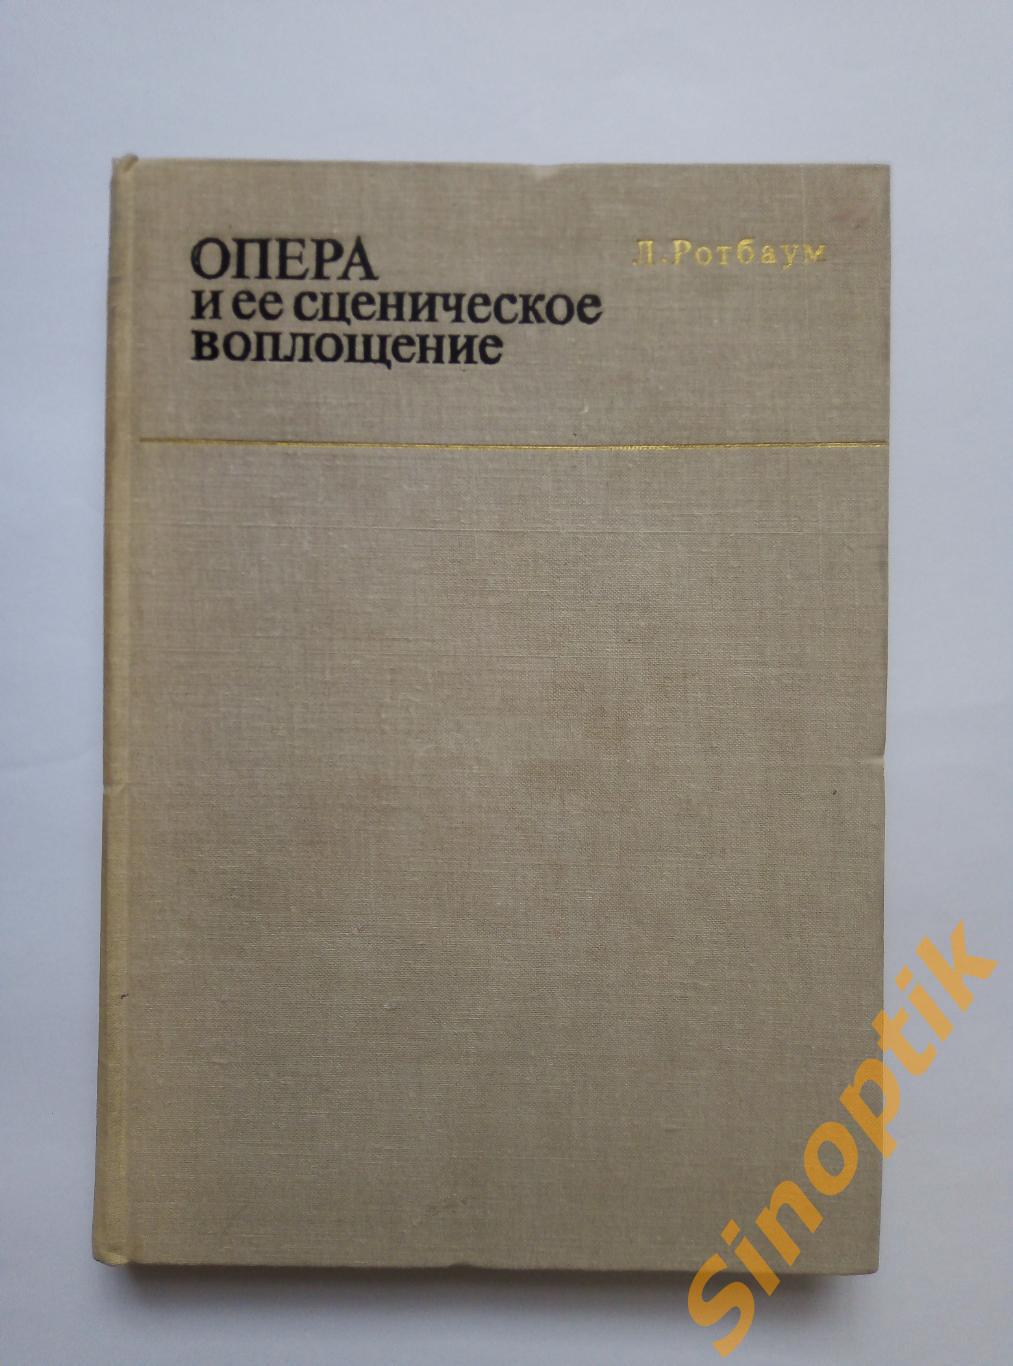 Опера и её сценическое воплощение. Записки режиссёра. Лия Ротбаум. 1980